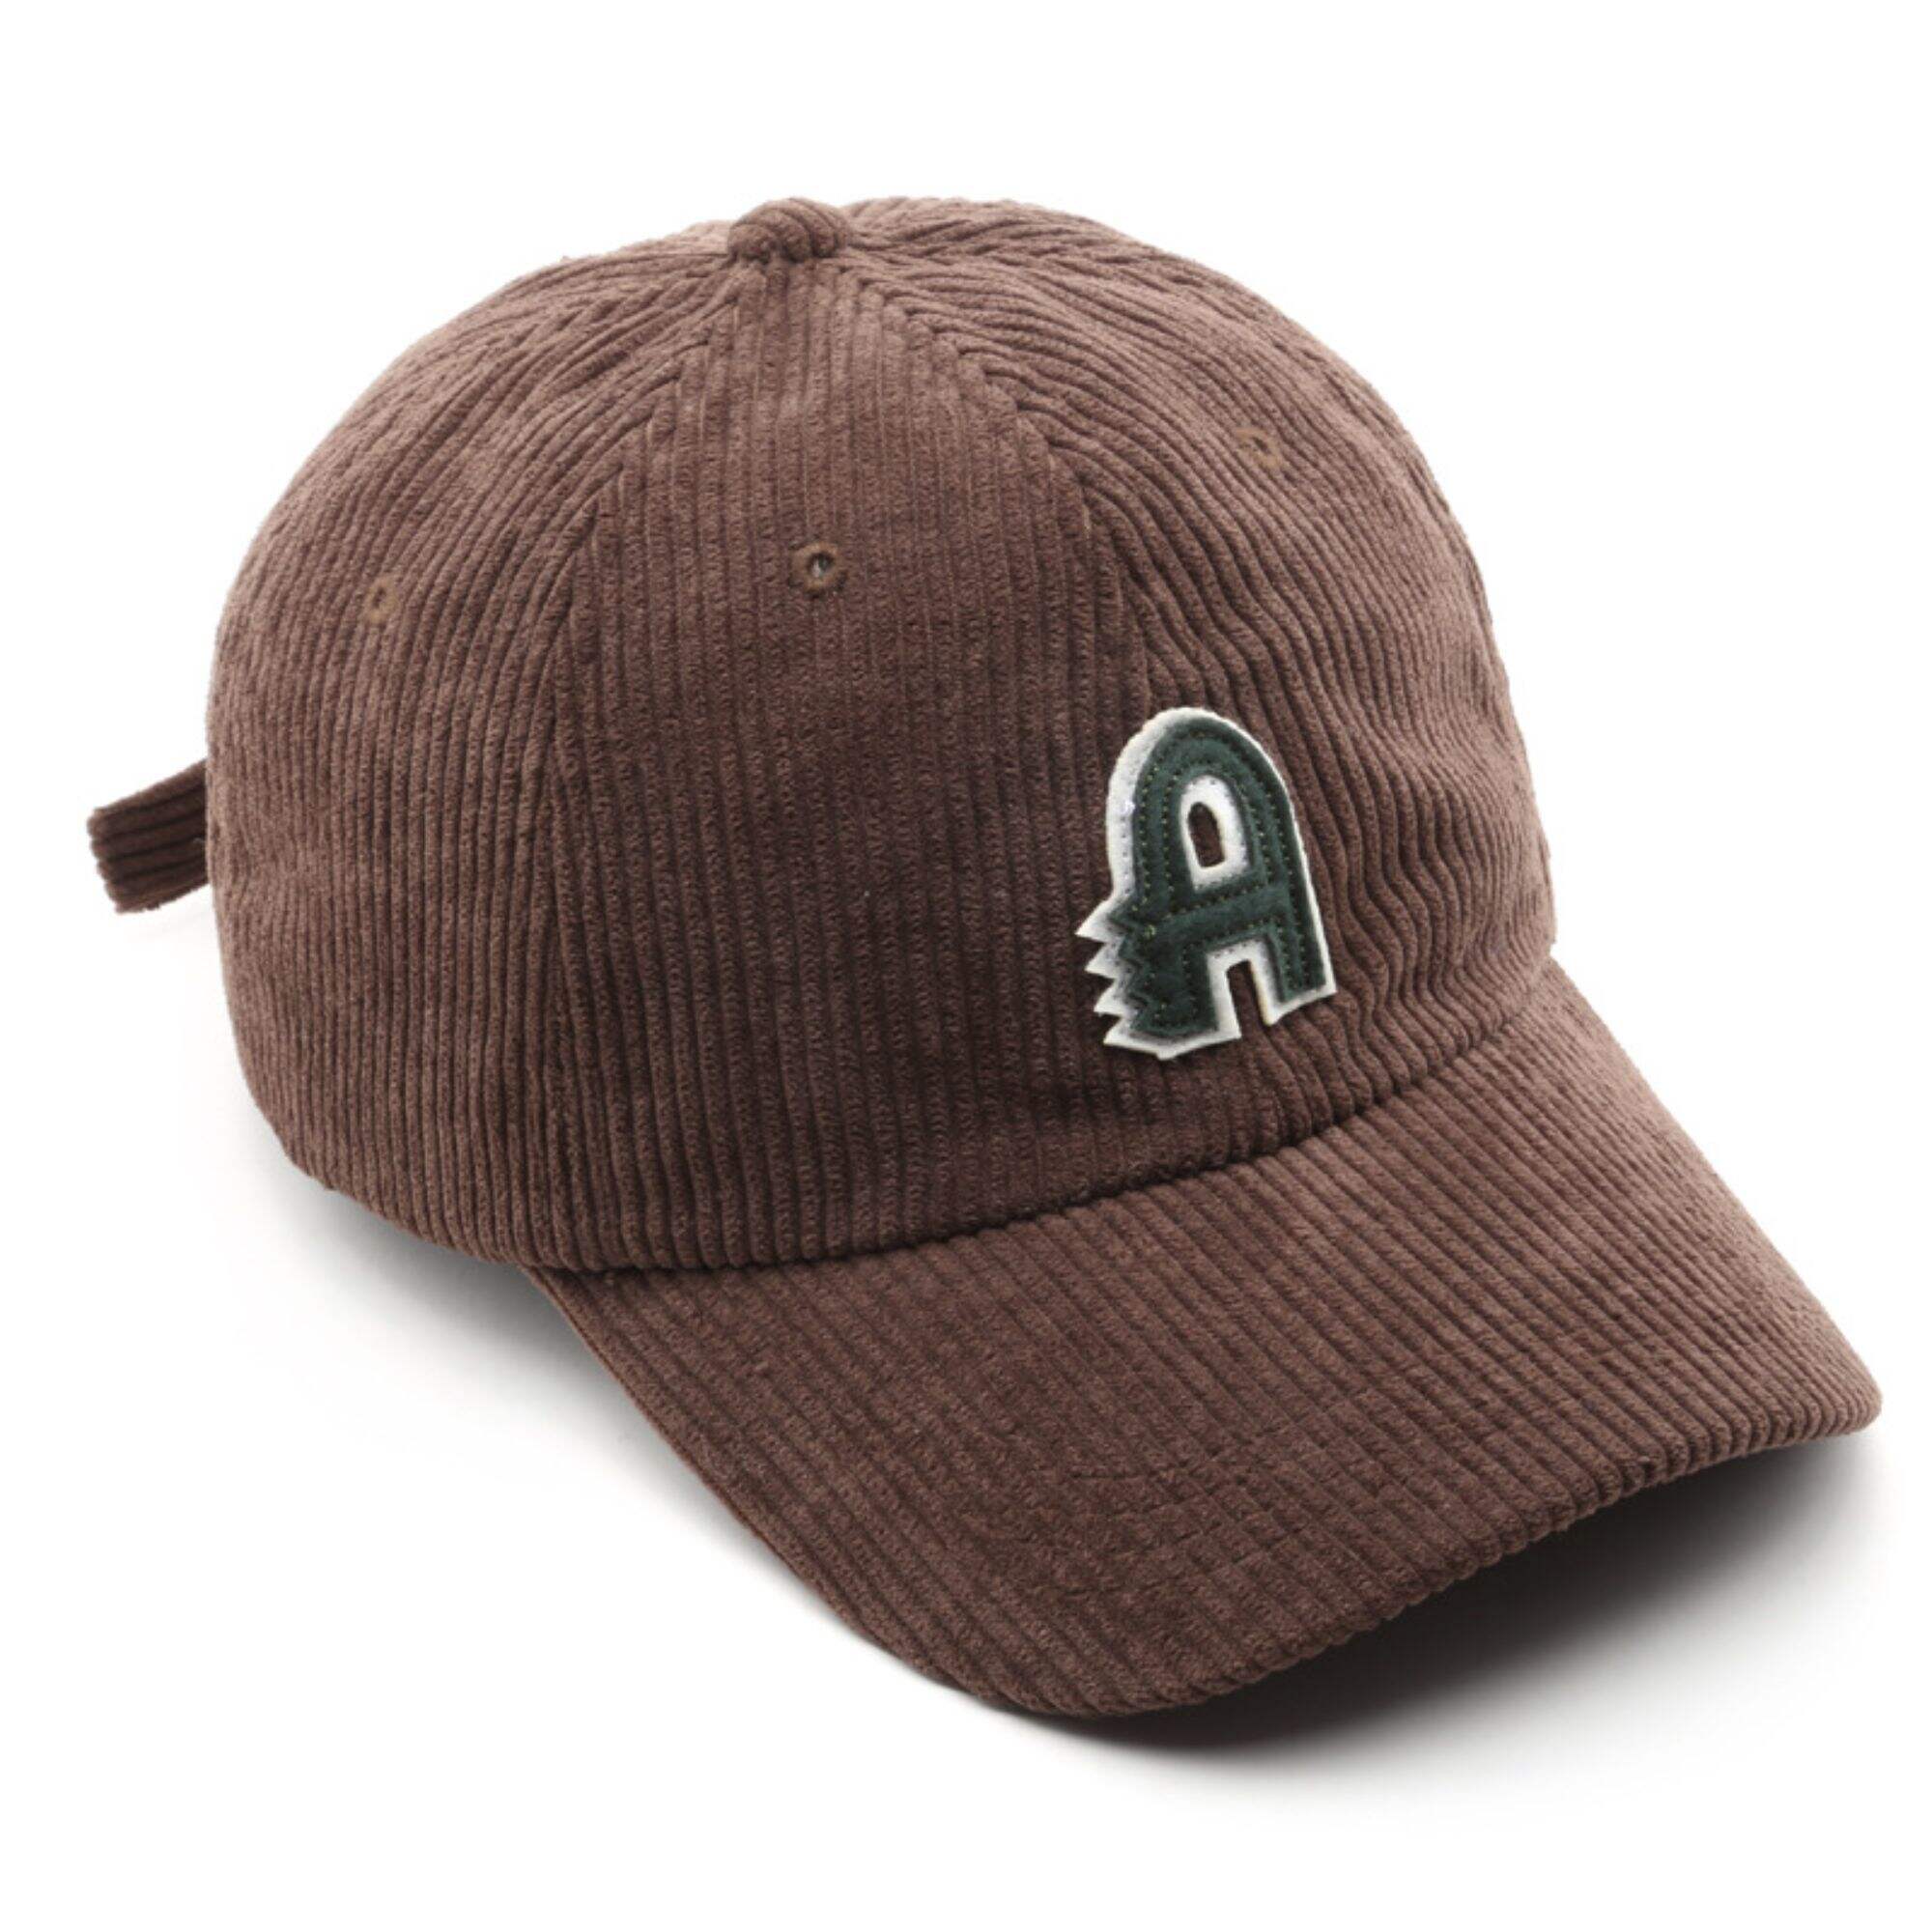 Corduroy applique embroidered baseball cap